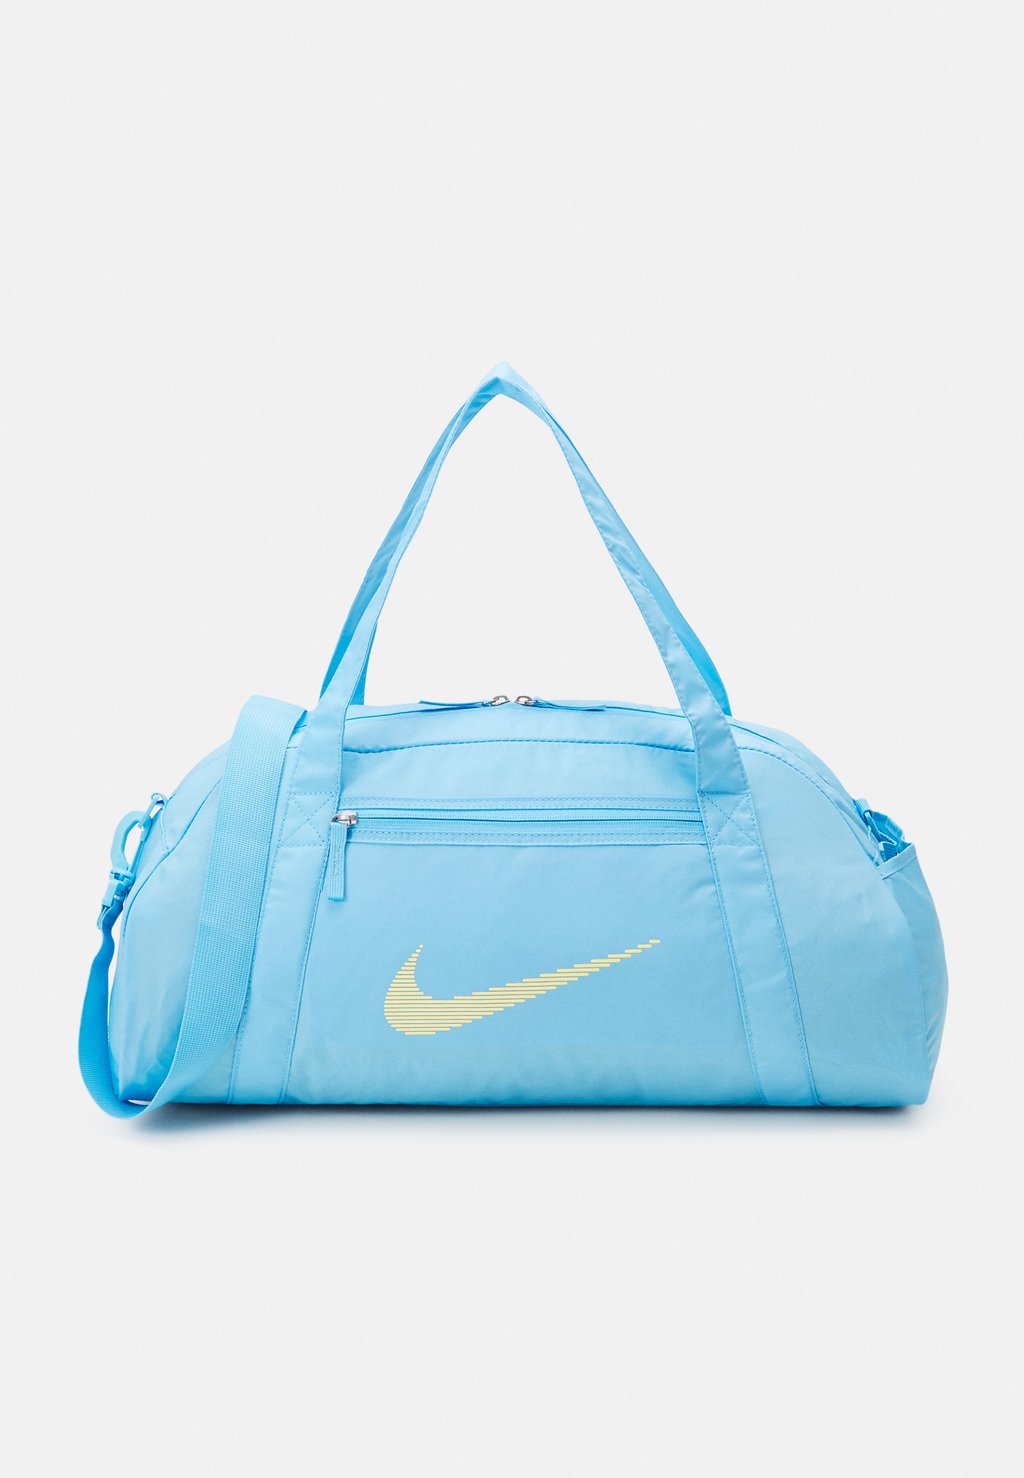 Спортивная сумка GYM CLUB Nike, цвет aquarius blue/laser orange спортивная сумка nike performance gym club retro unisex черный зеленый бежевый